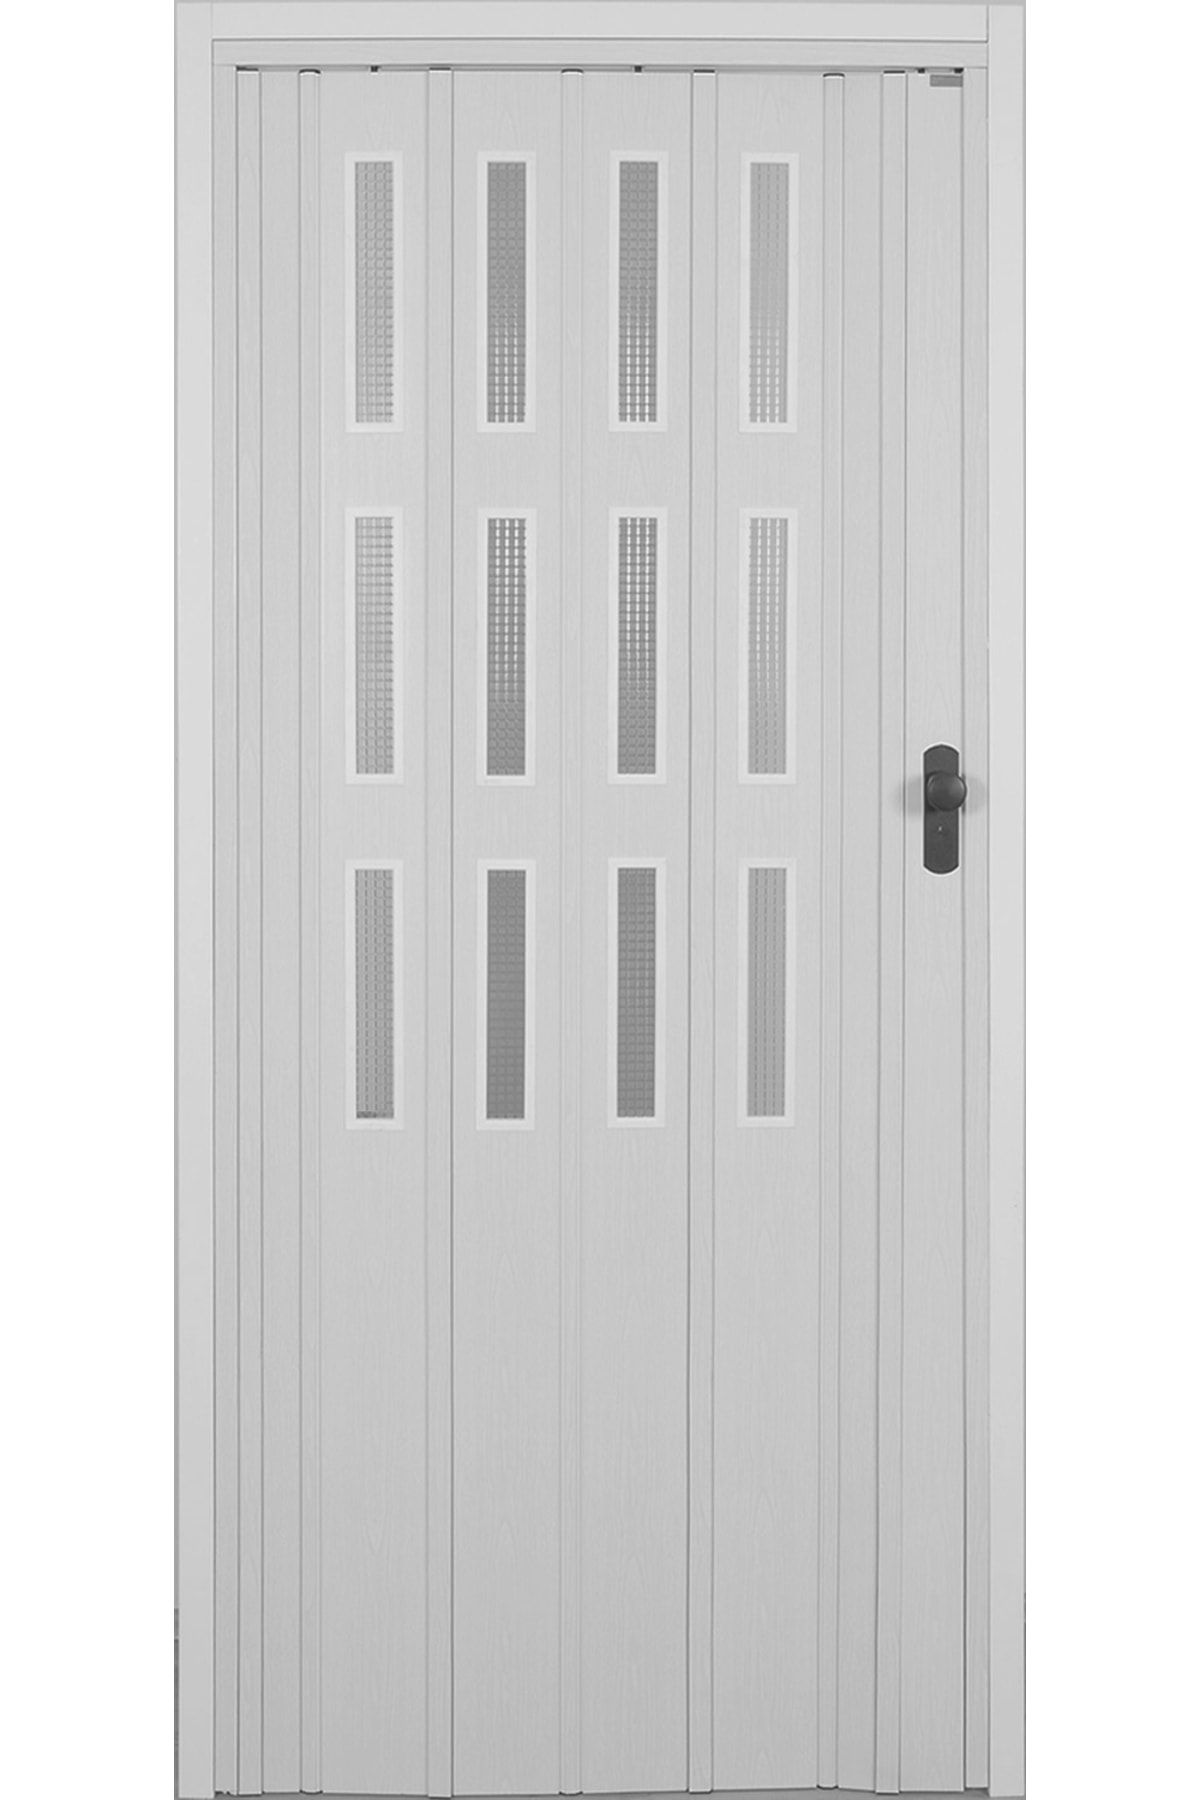 DEKORAKS Beyaz Camlı Akordiyon Kapı 87x200 cm 3 Sıra